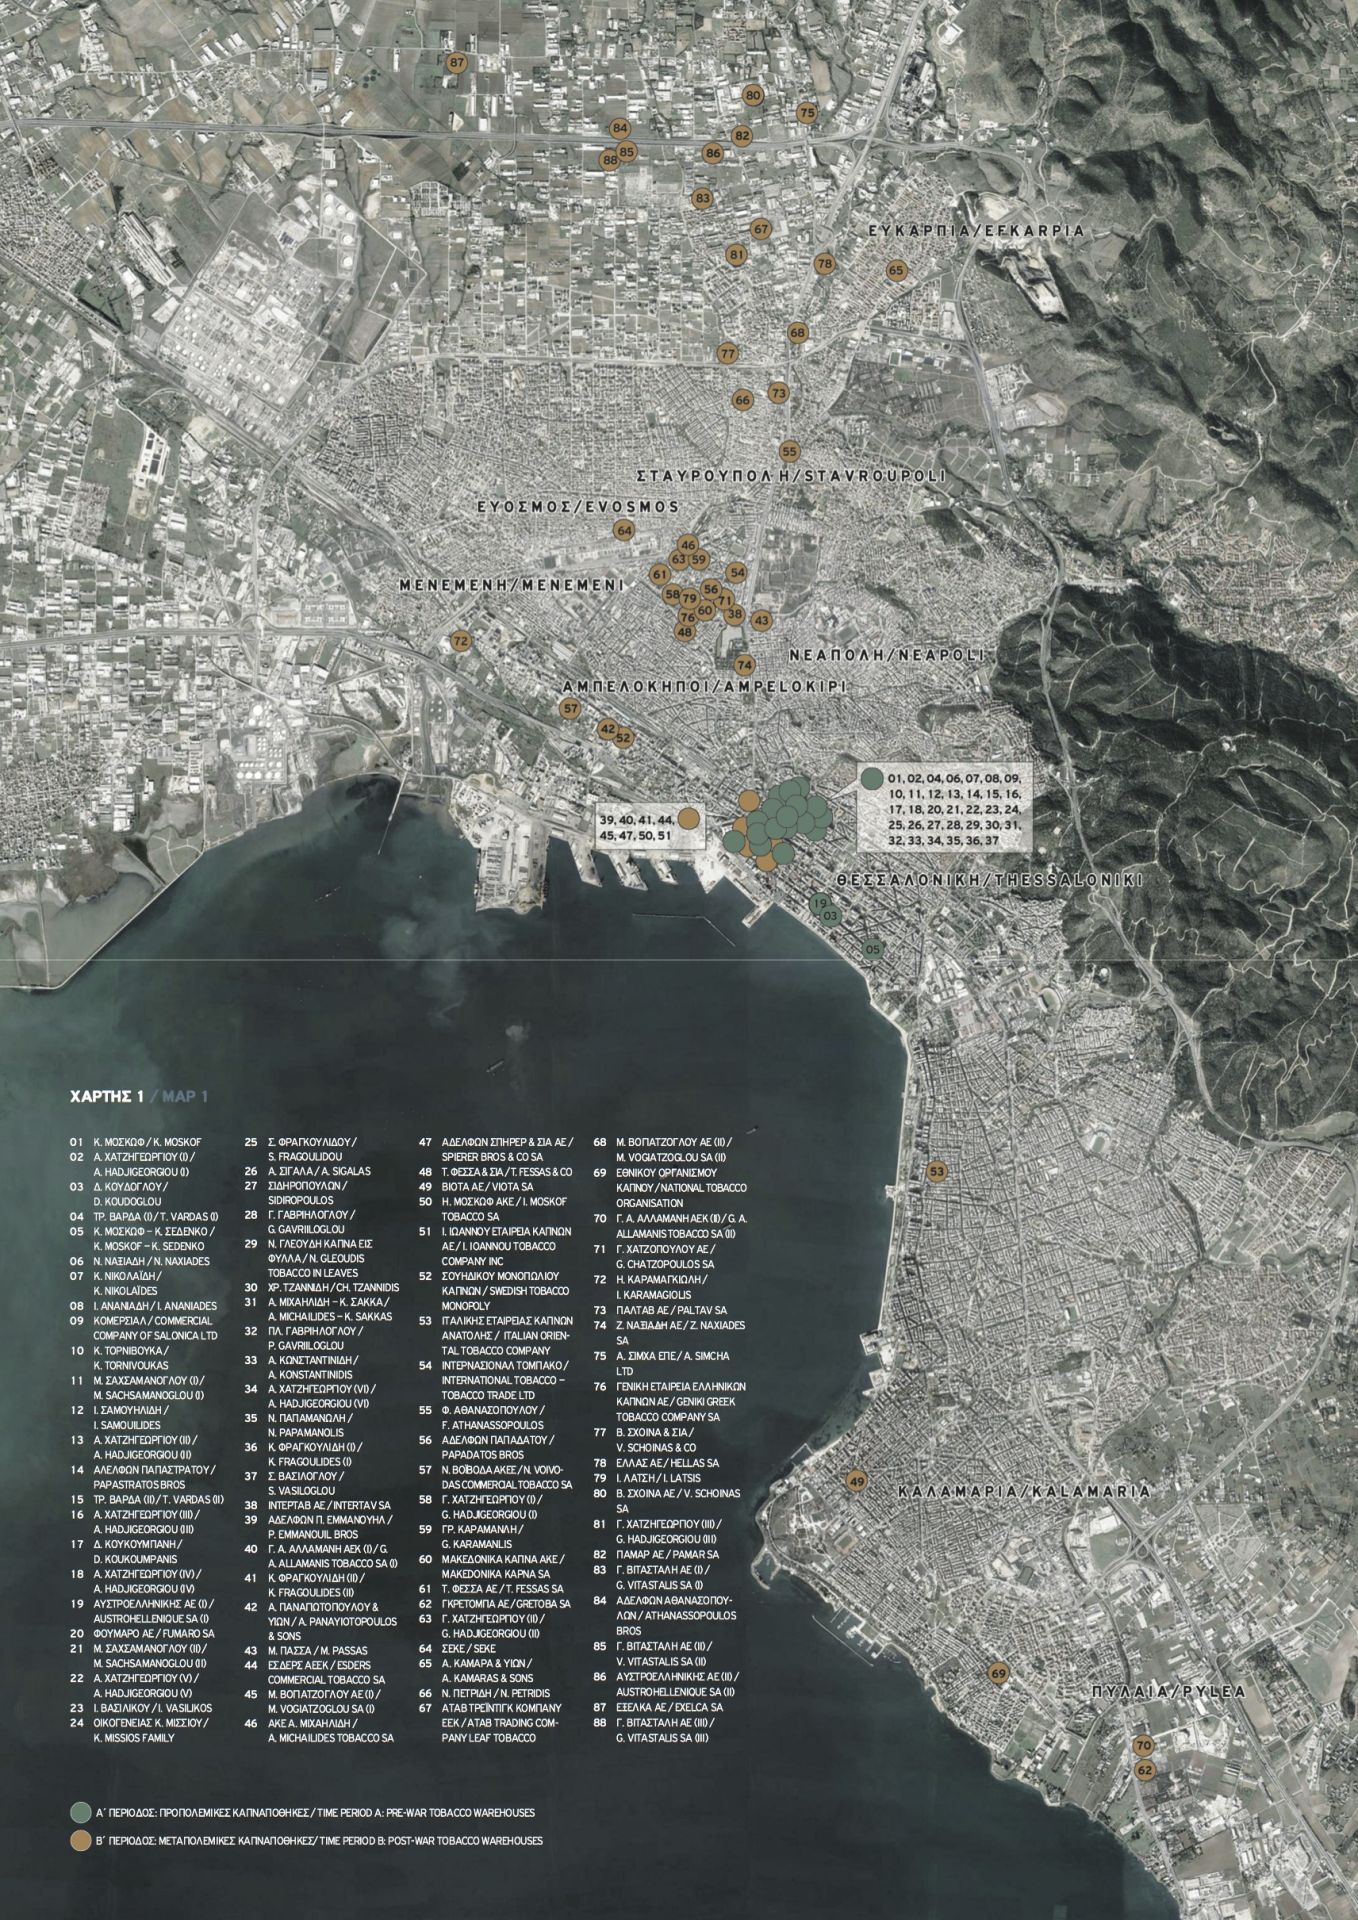 Χωρική κατανομή και διασπορά των κτηρίων των καπναποθηκών σε χάρτη στο πολεοδομικό συγκρότημα της Θεσσαλονίκης.